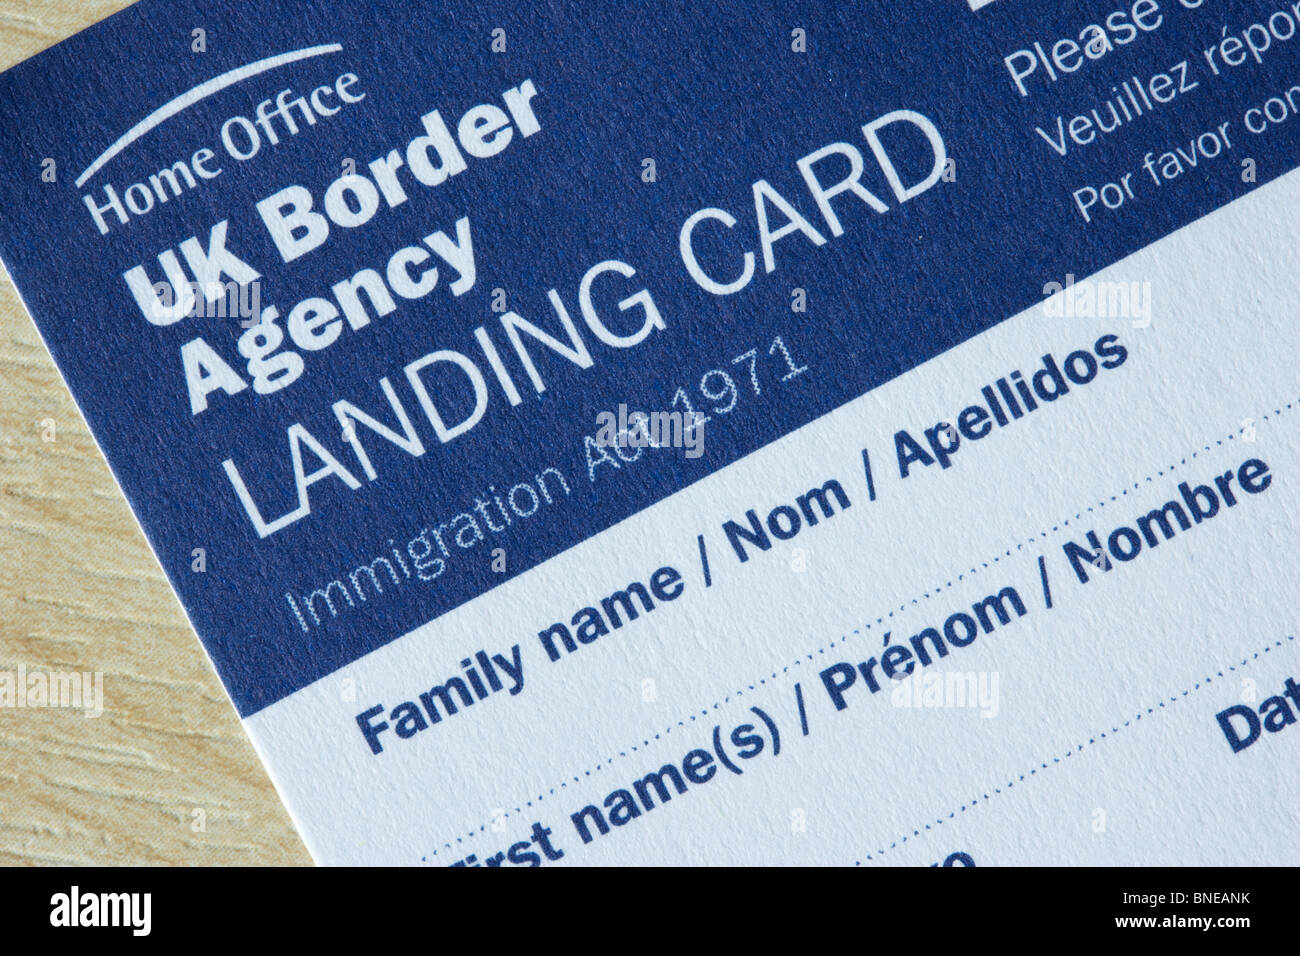 Tarjeta de desembarque de UK Border Agency formulario de inmigración Foto de stock